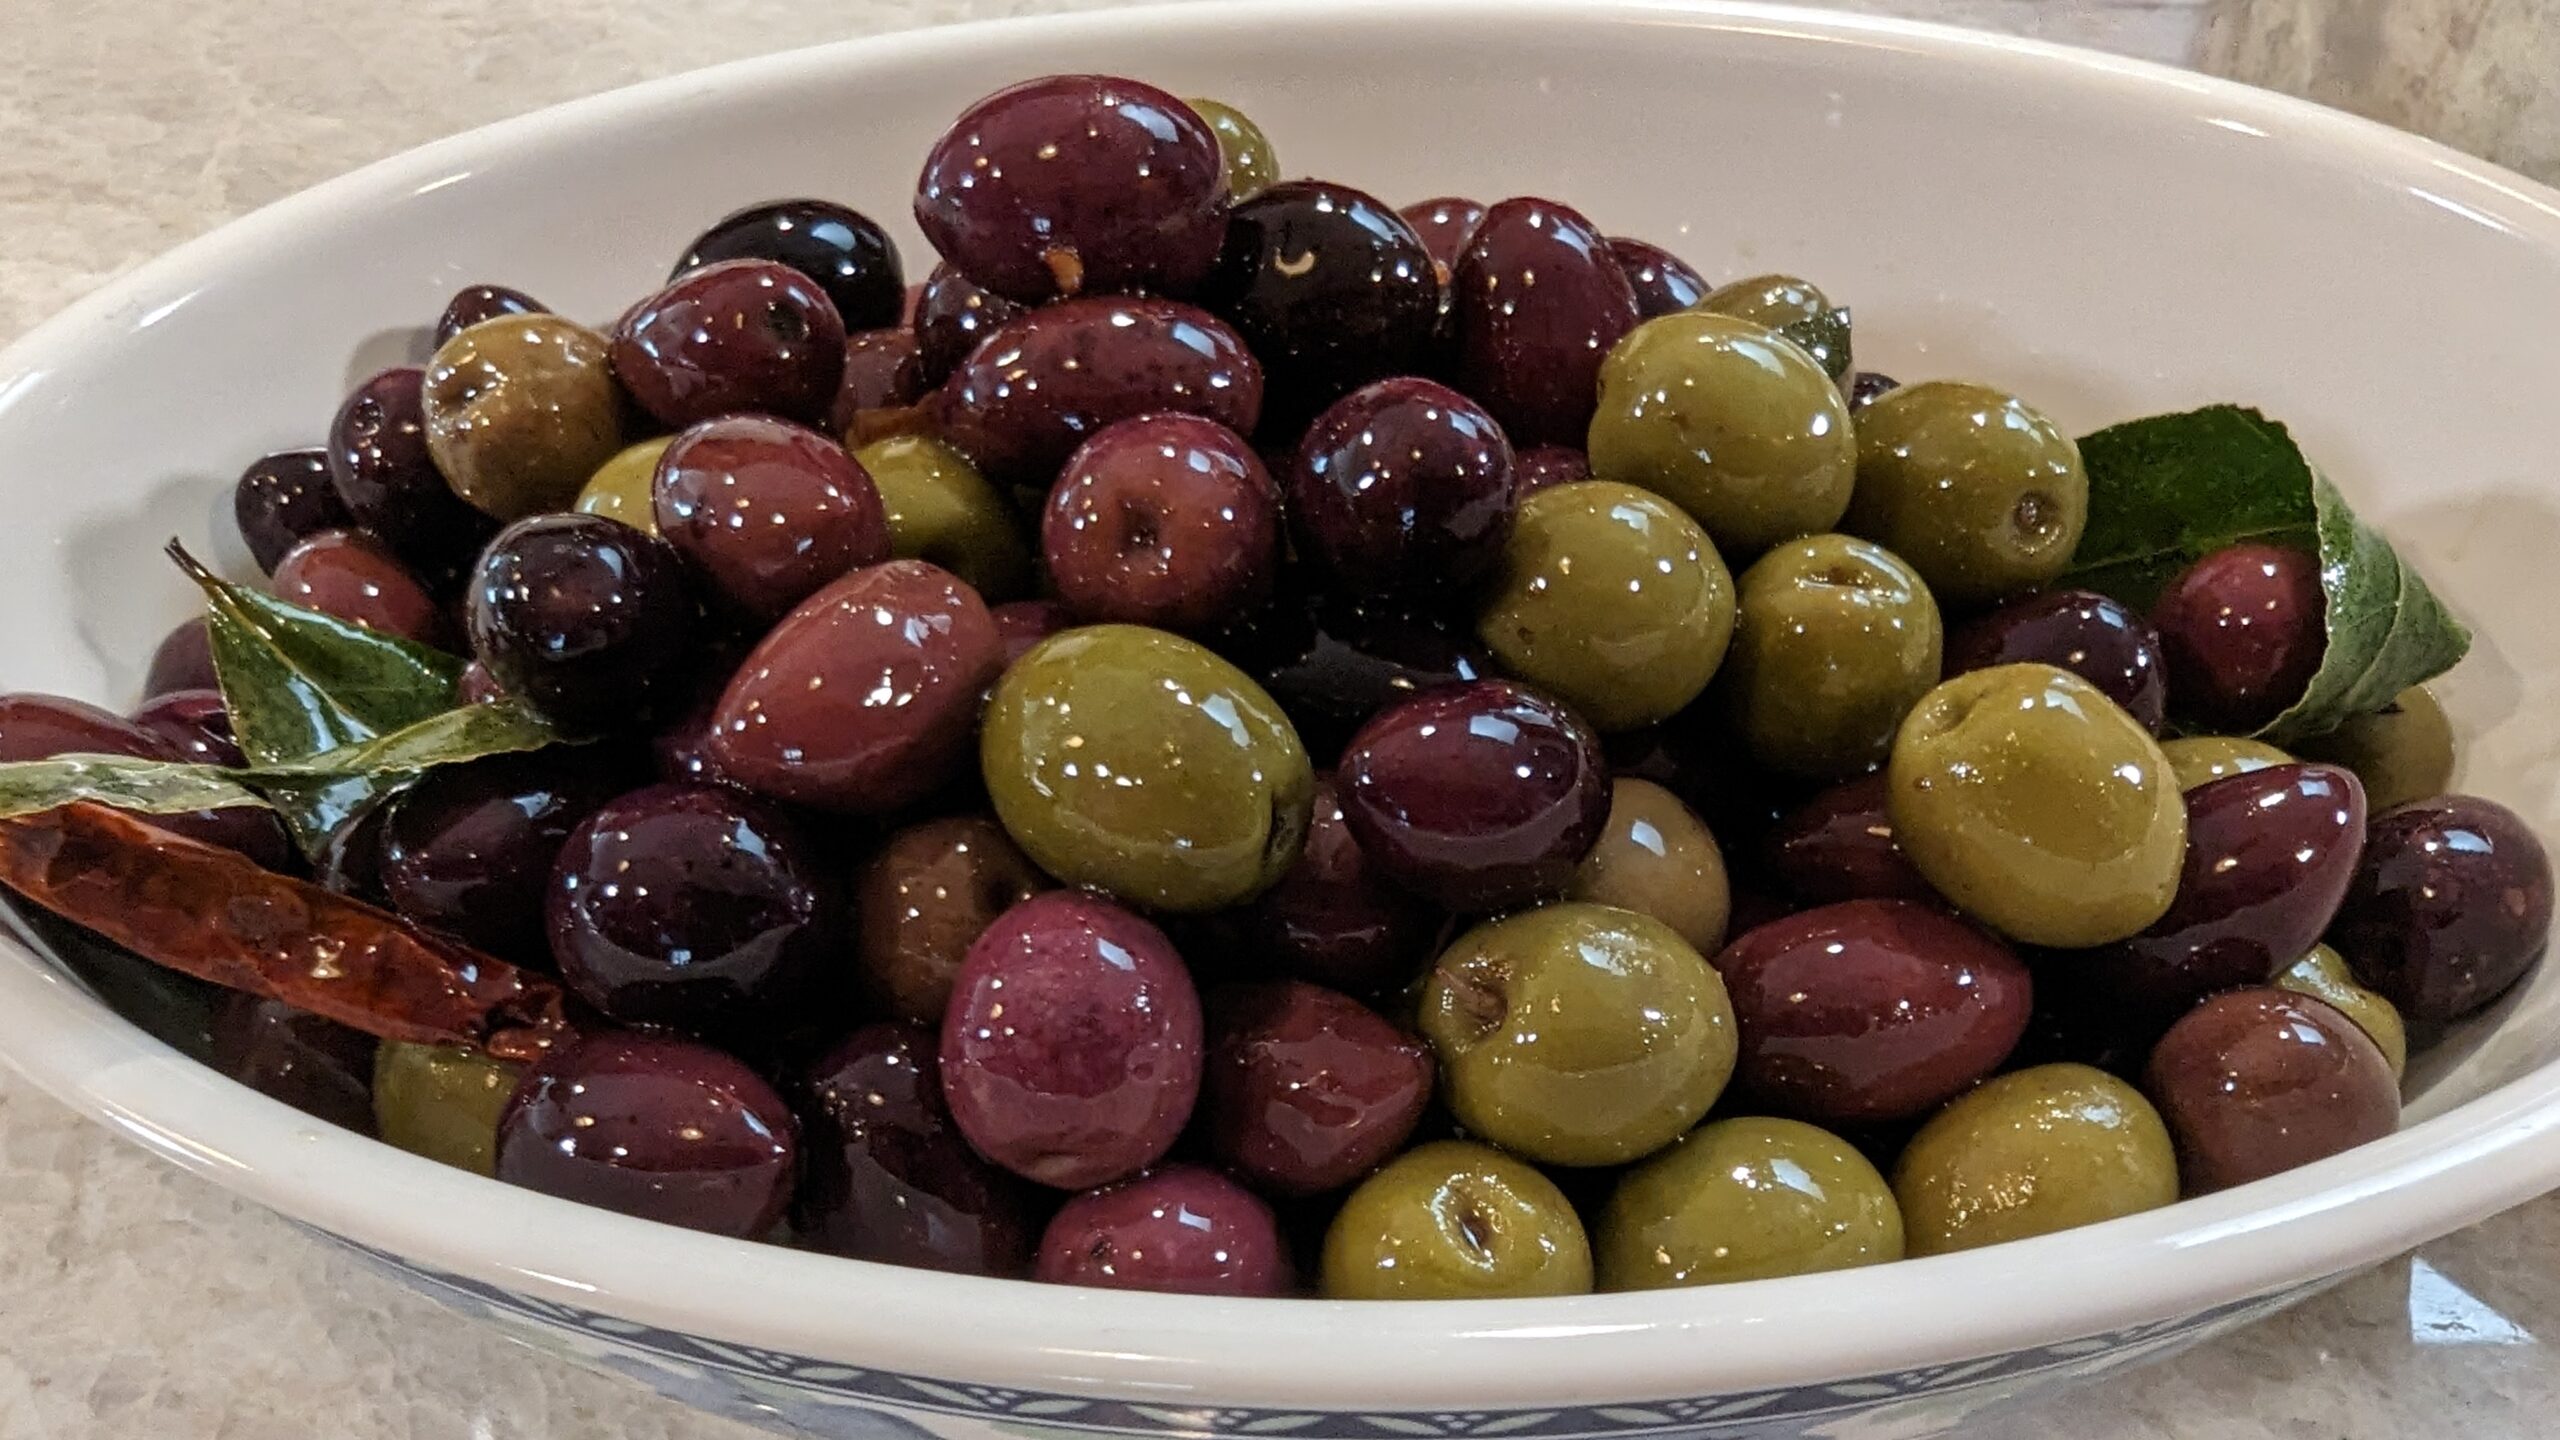 Sautéed Olives "Olive Saltate in padella"